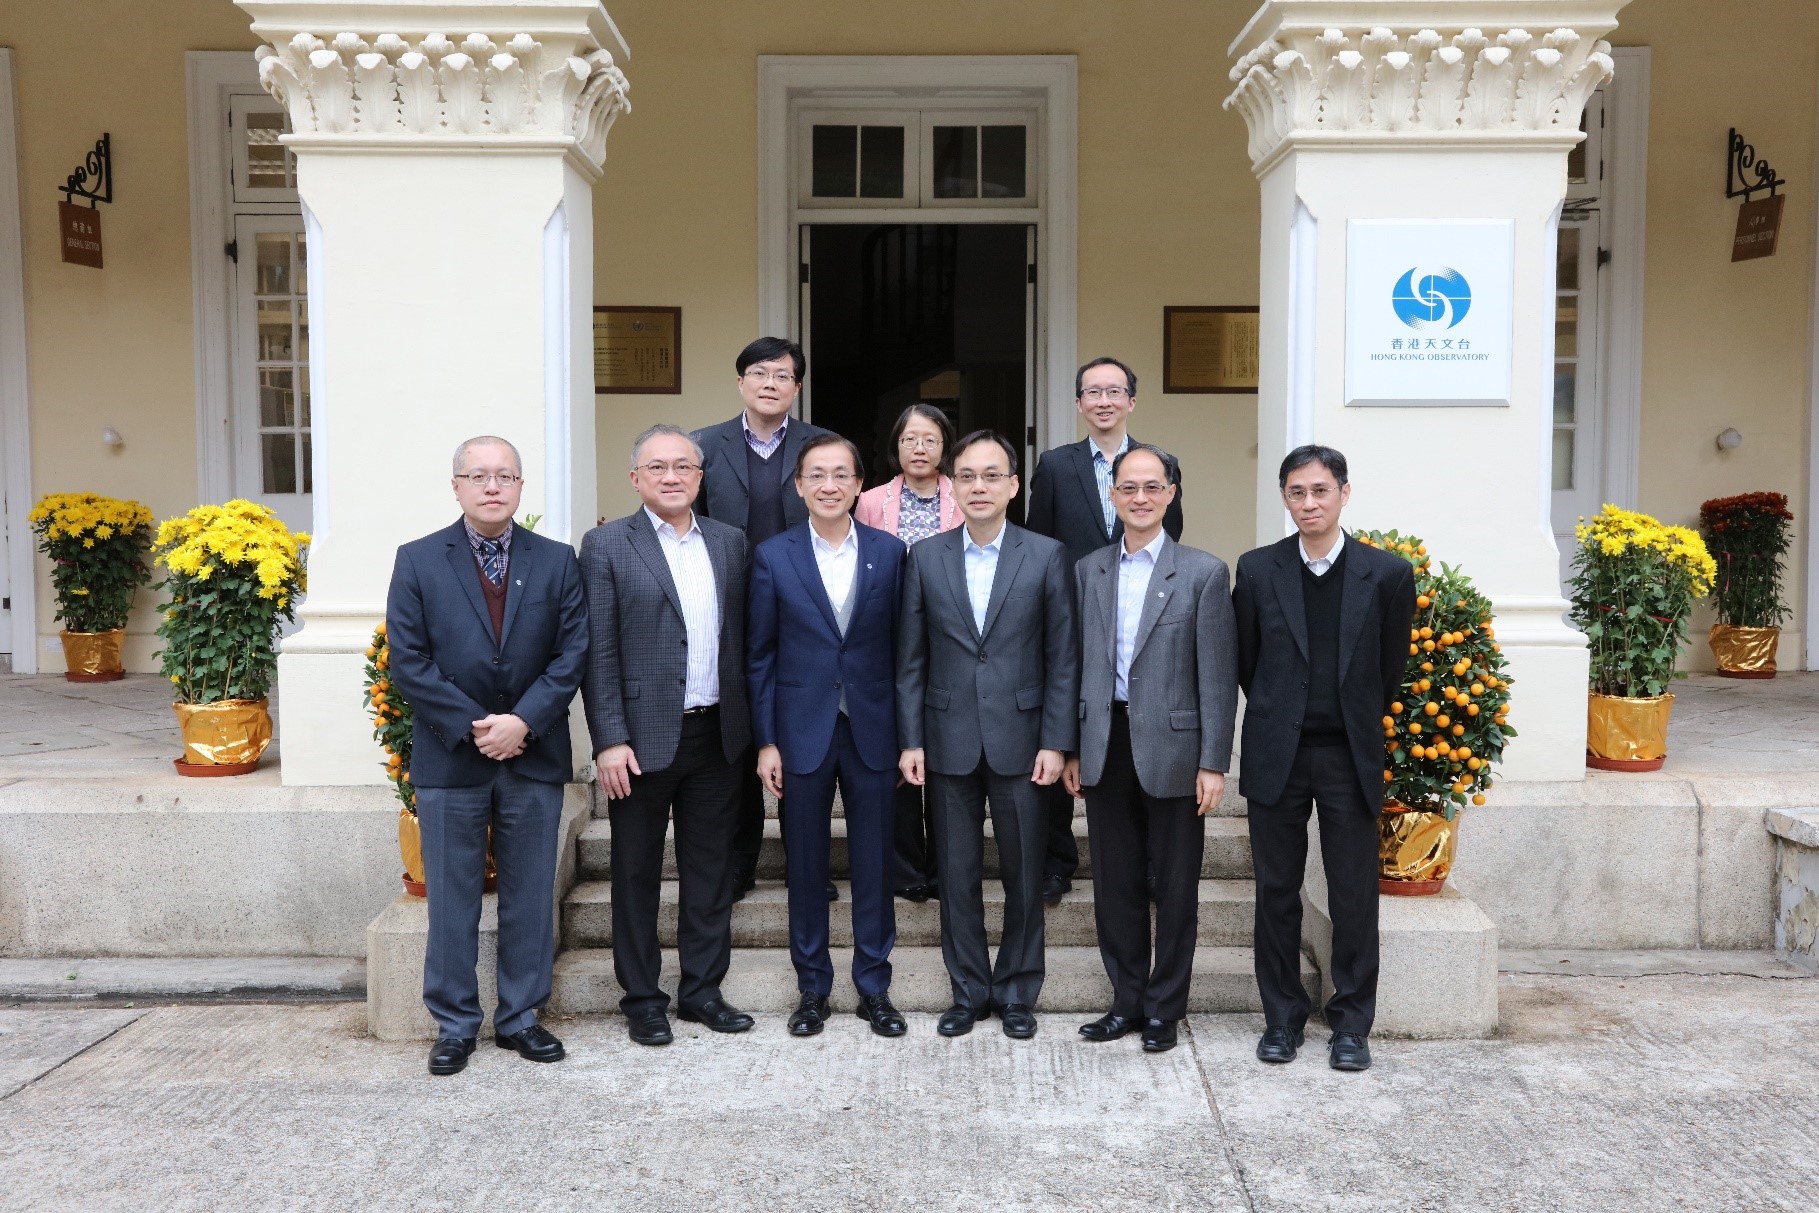 通訊事務管理局通訊事務總監梁仲賢先生 (前排右三) 率領代表團在 2020 年 1 月 22 日到訪天文台